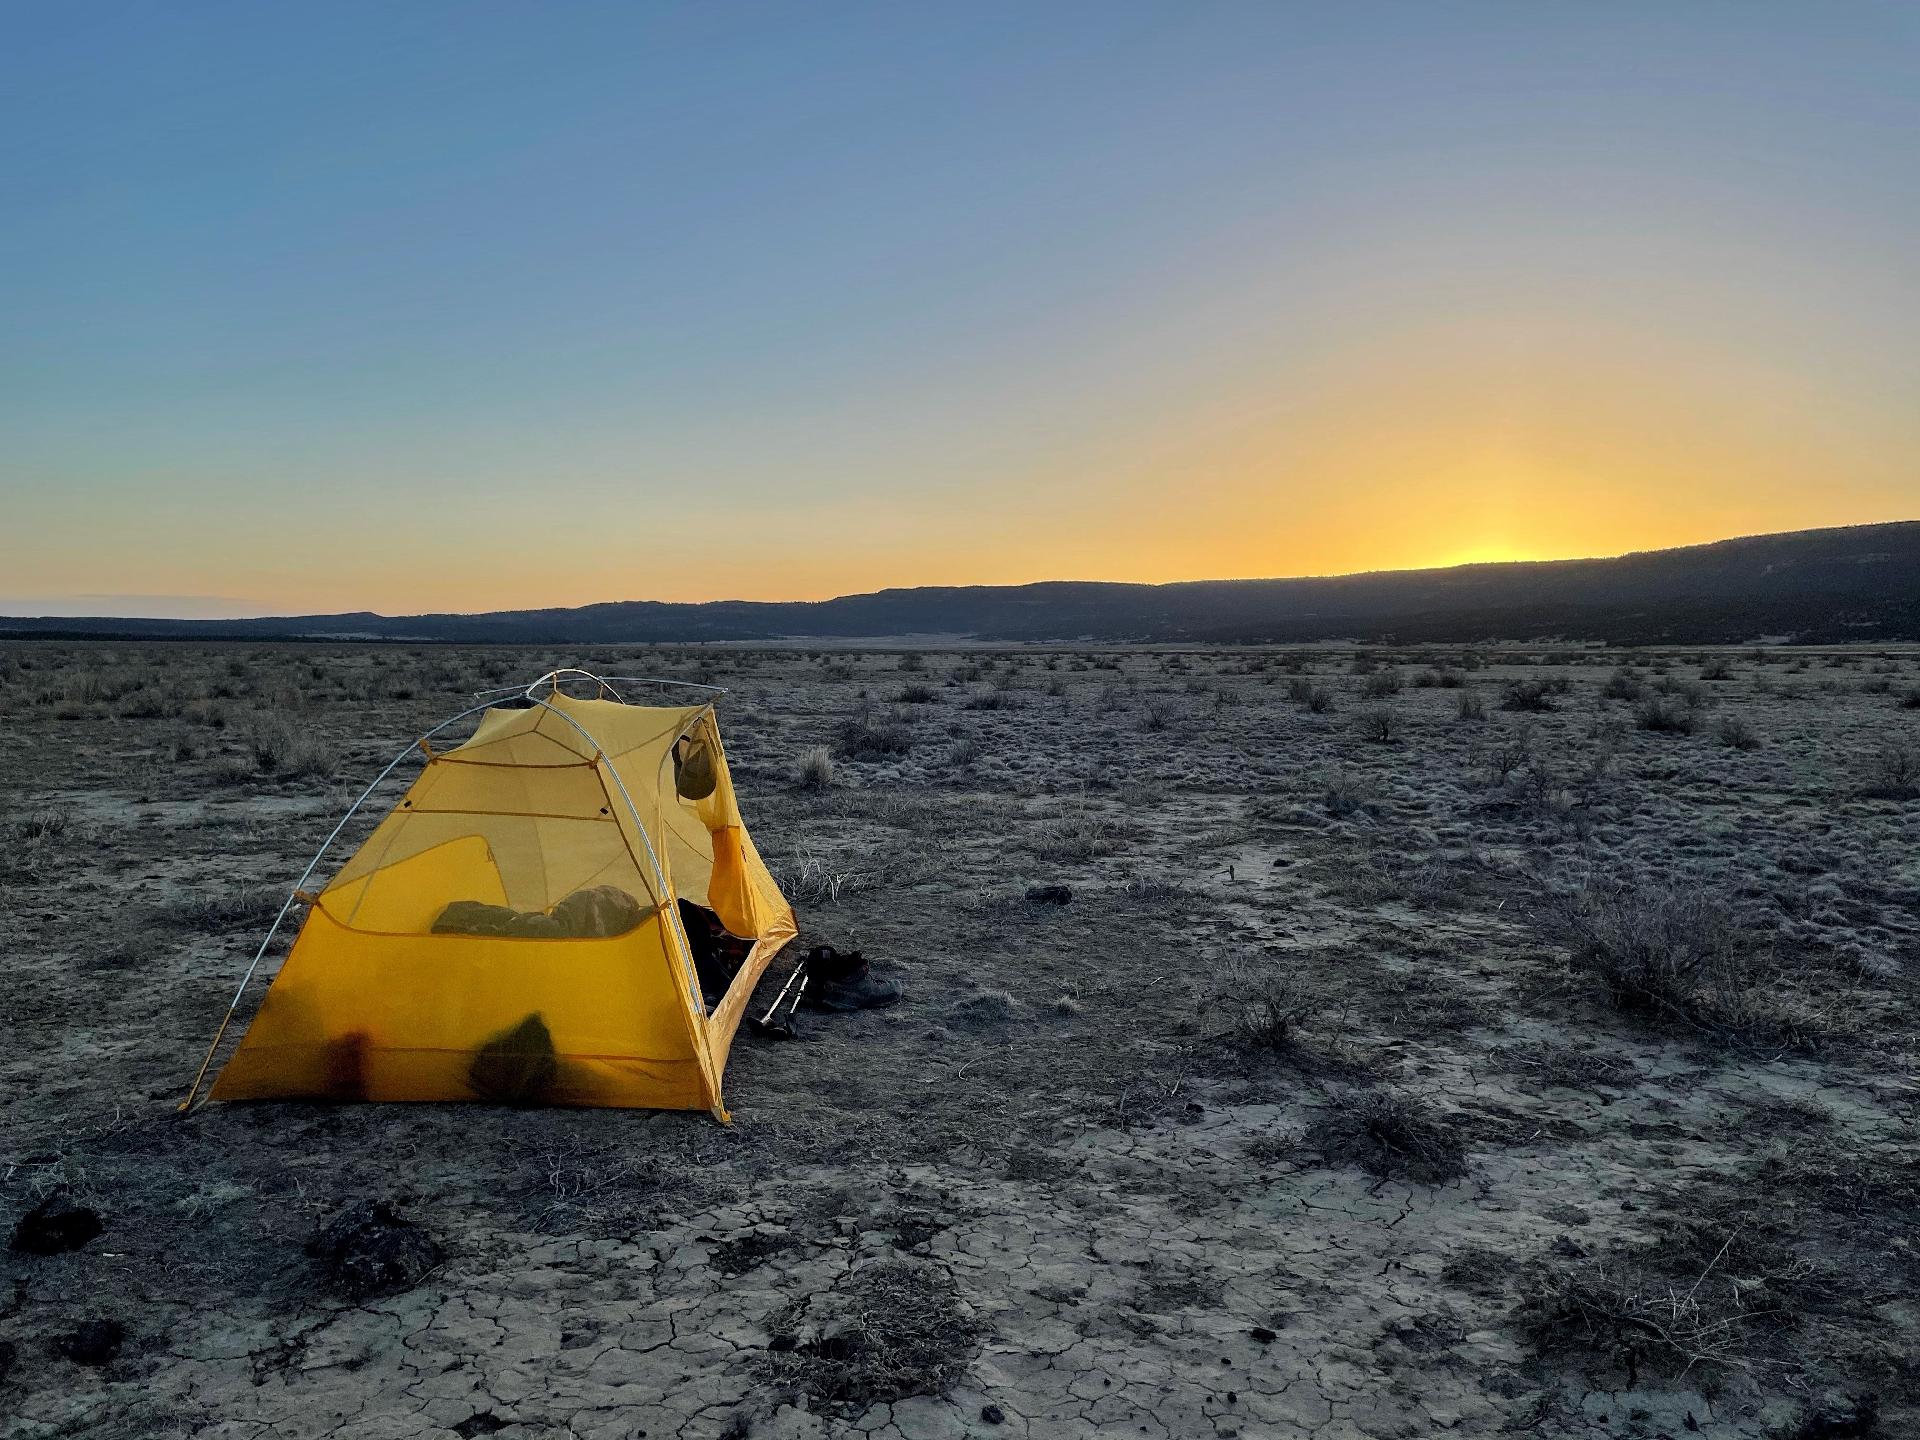 Camping no deserto, ao norte do Novo México - Arquivo pessoal